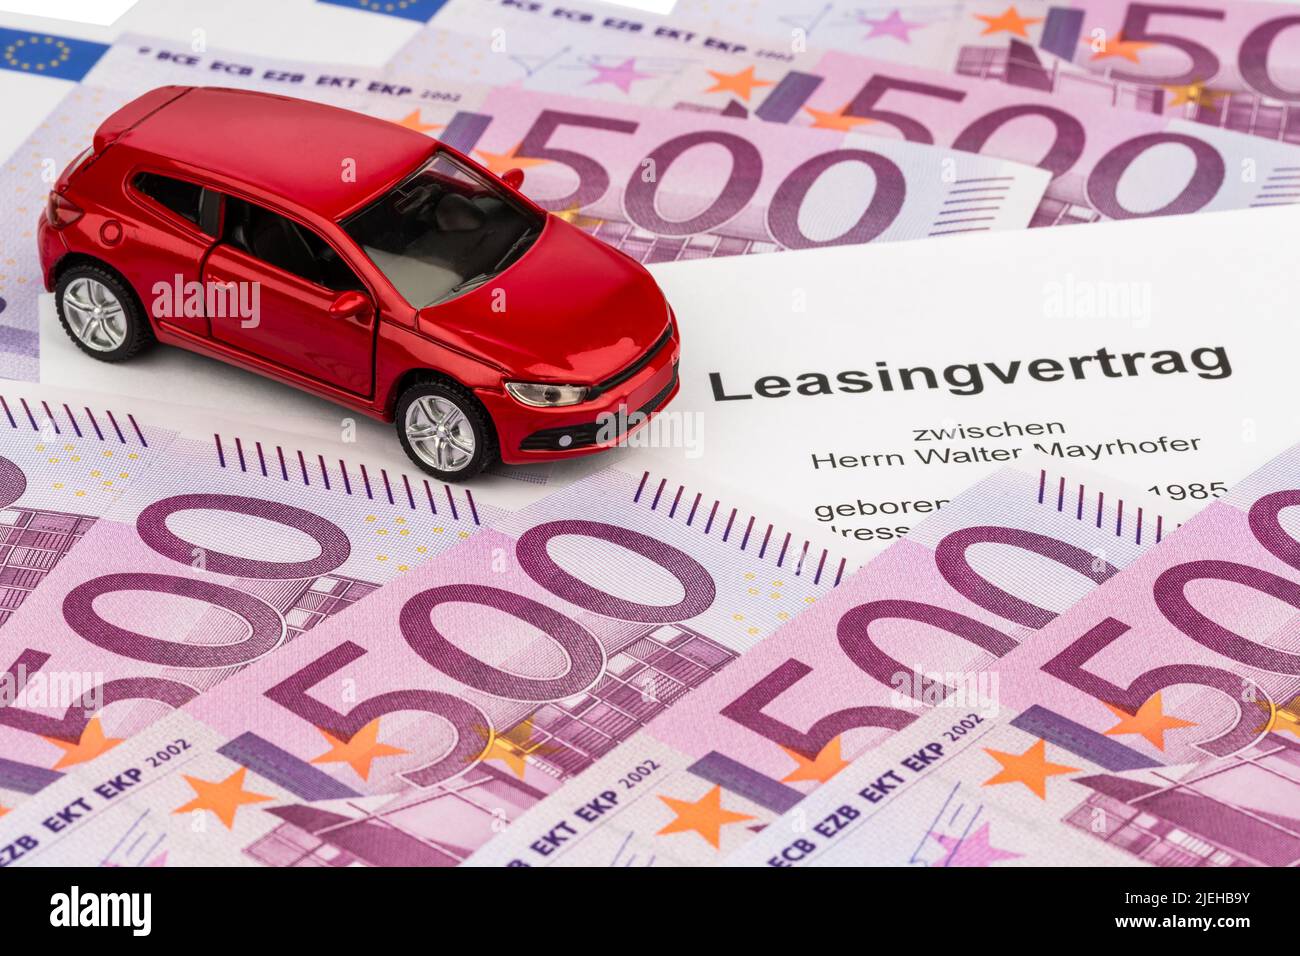 Ein Leasingvertrag, (Autoleasing), für ein neues Auto beim Autohändler, Kfz, PKW, Foto de stock